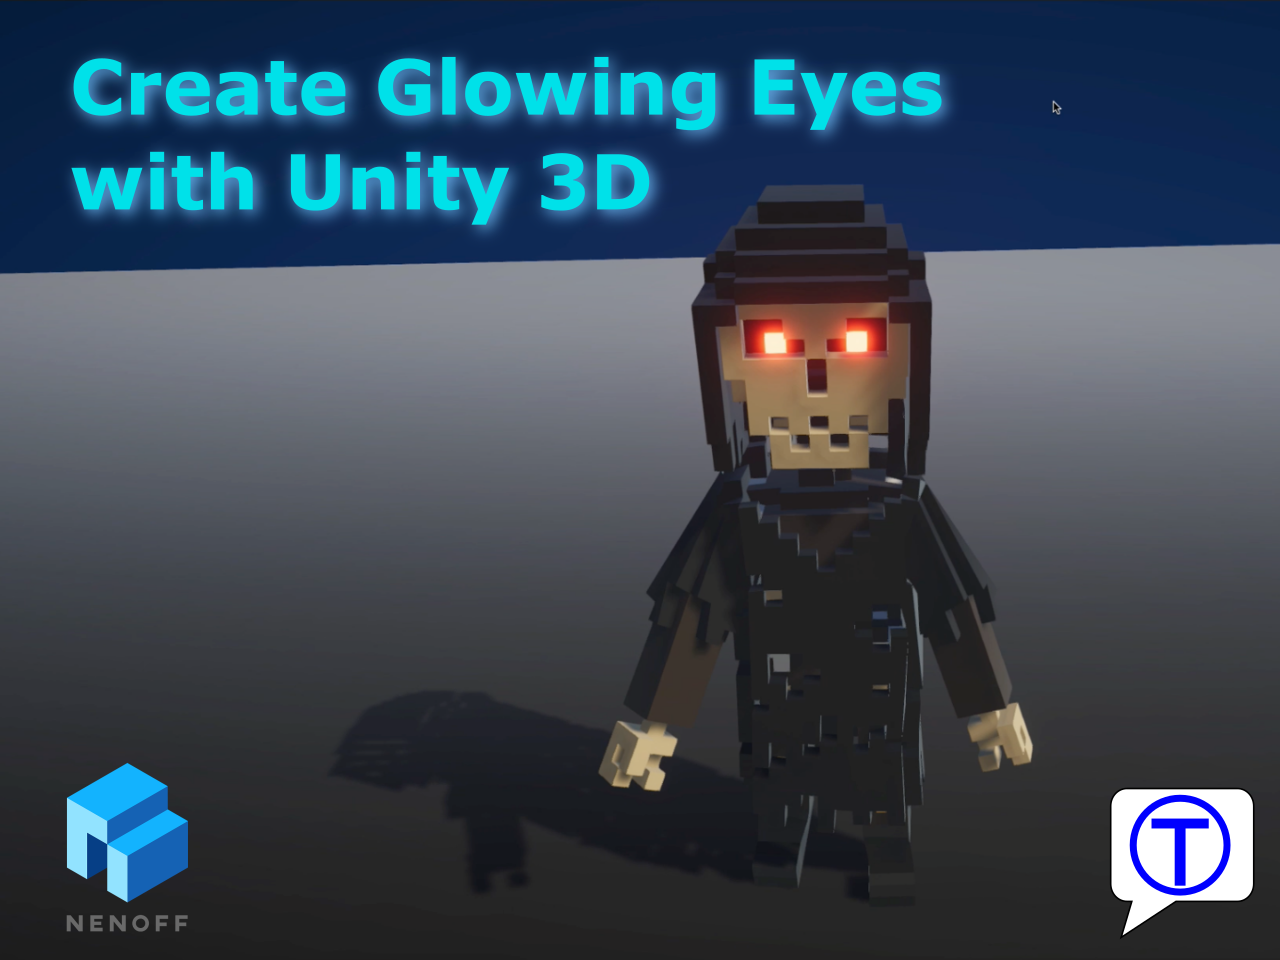 Create glowing eyes in Unity 3D